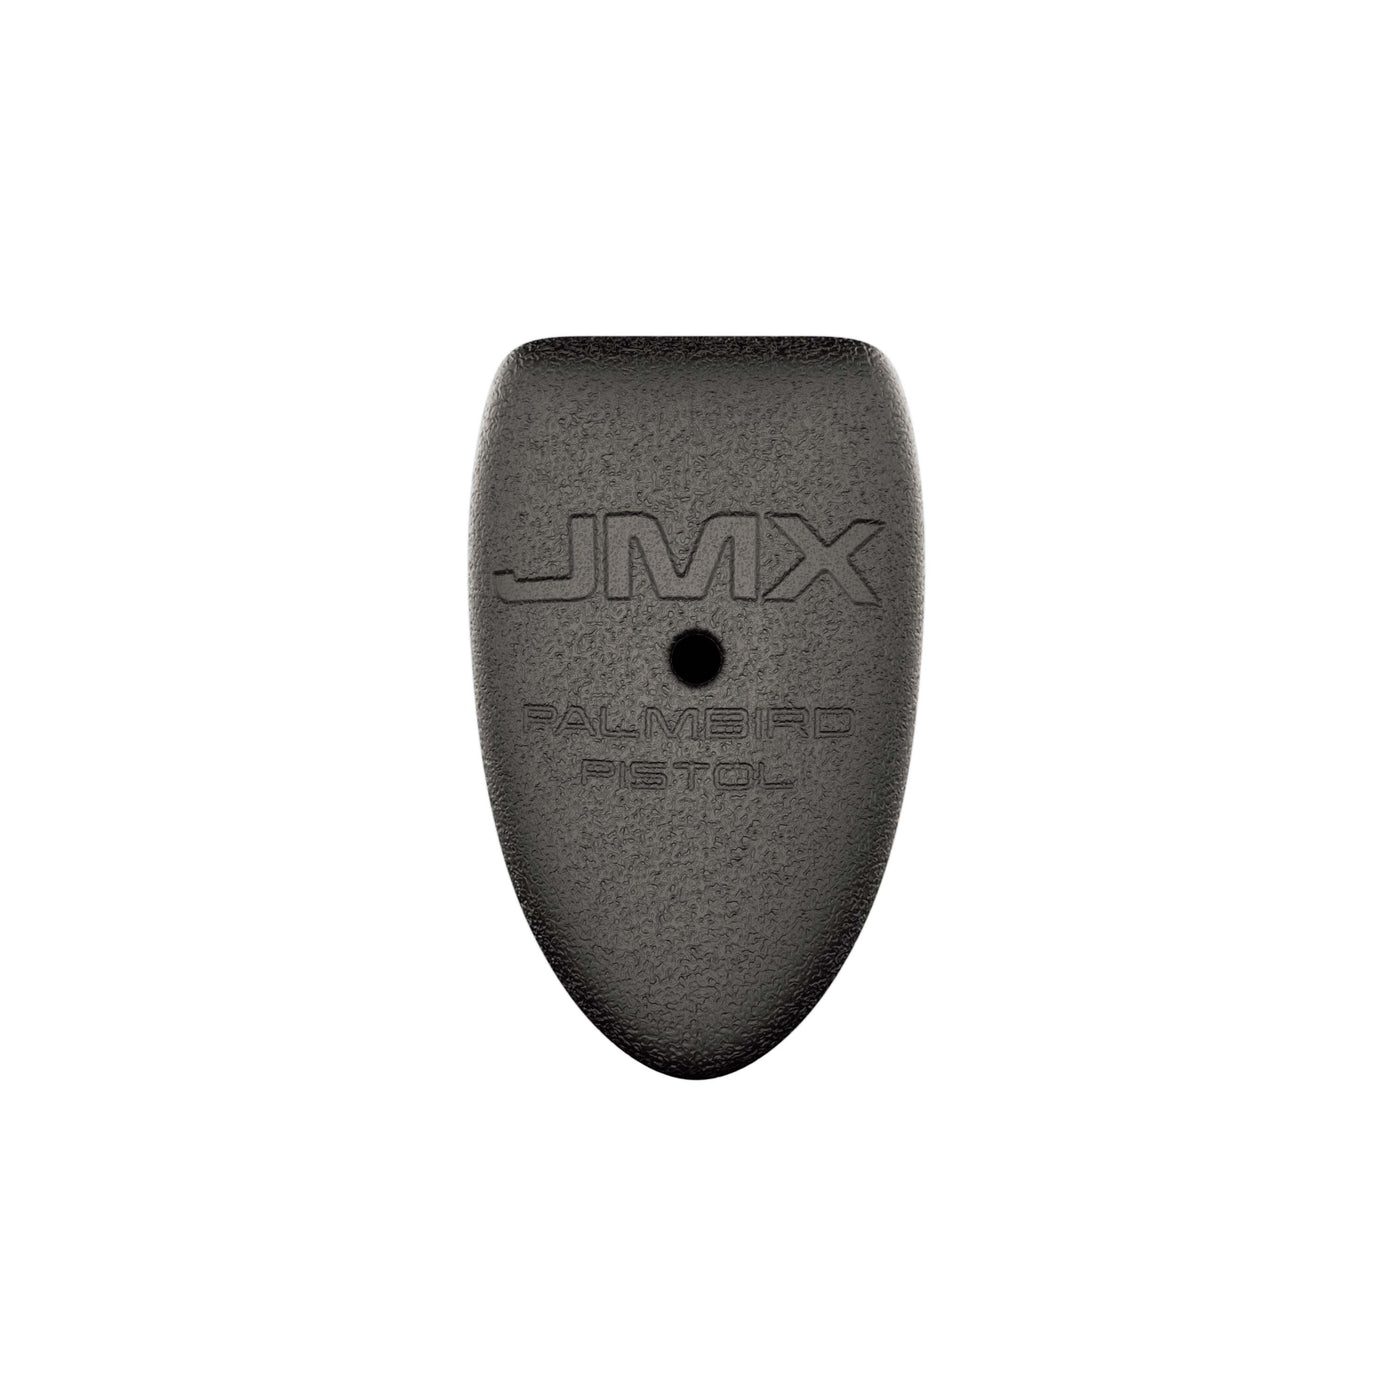 JMX Palmbird™ Pistol